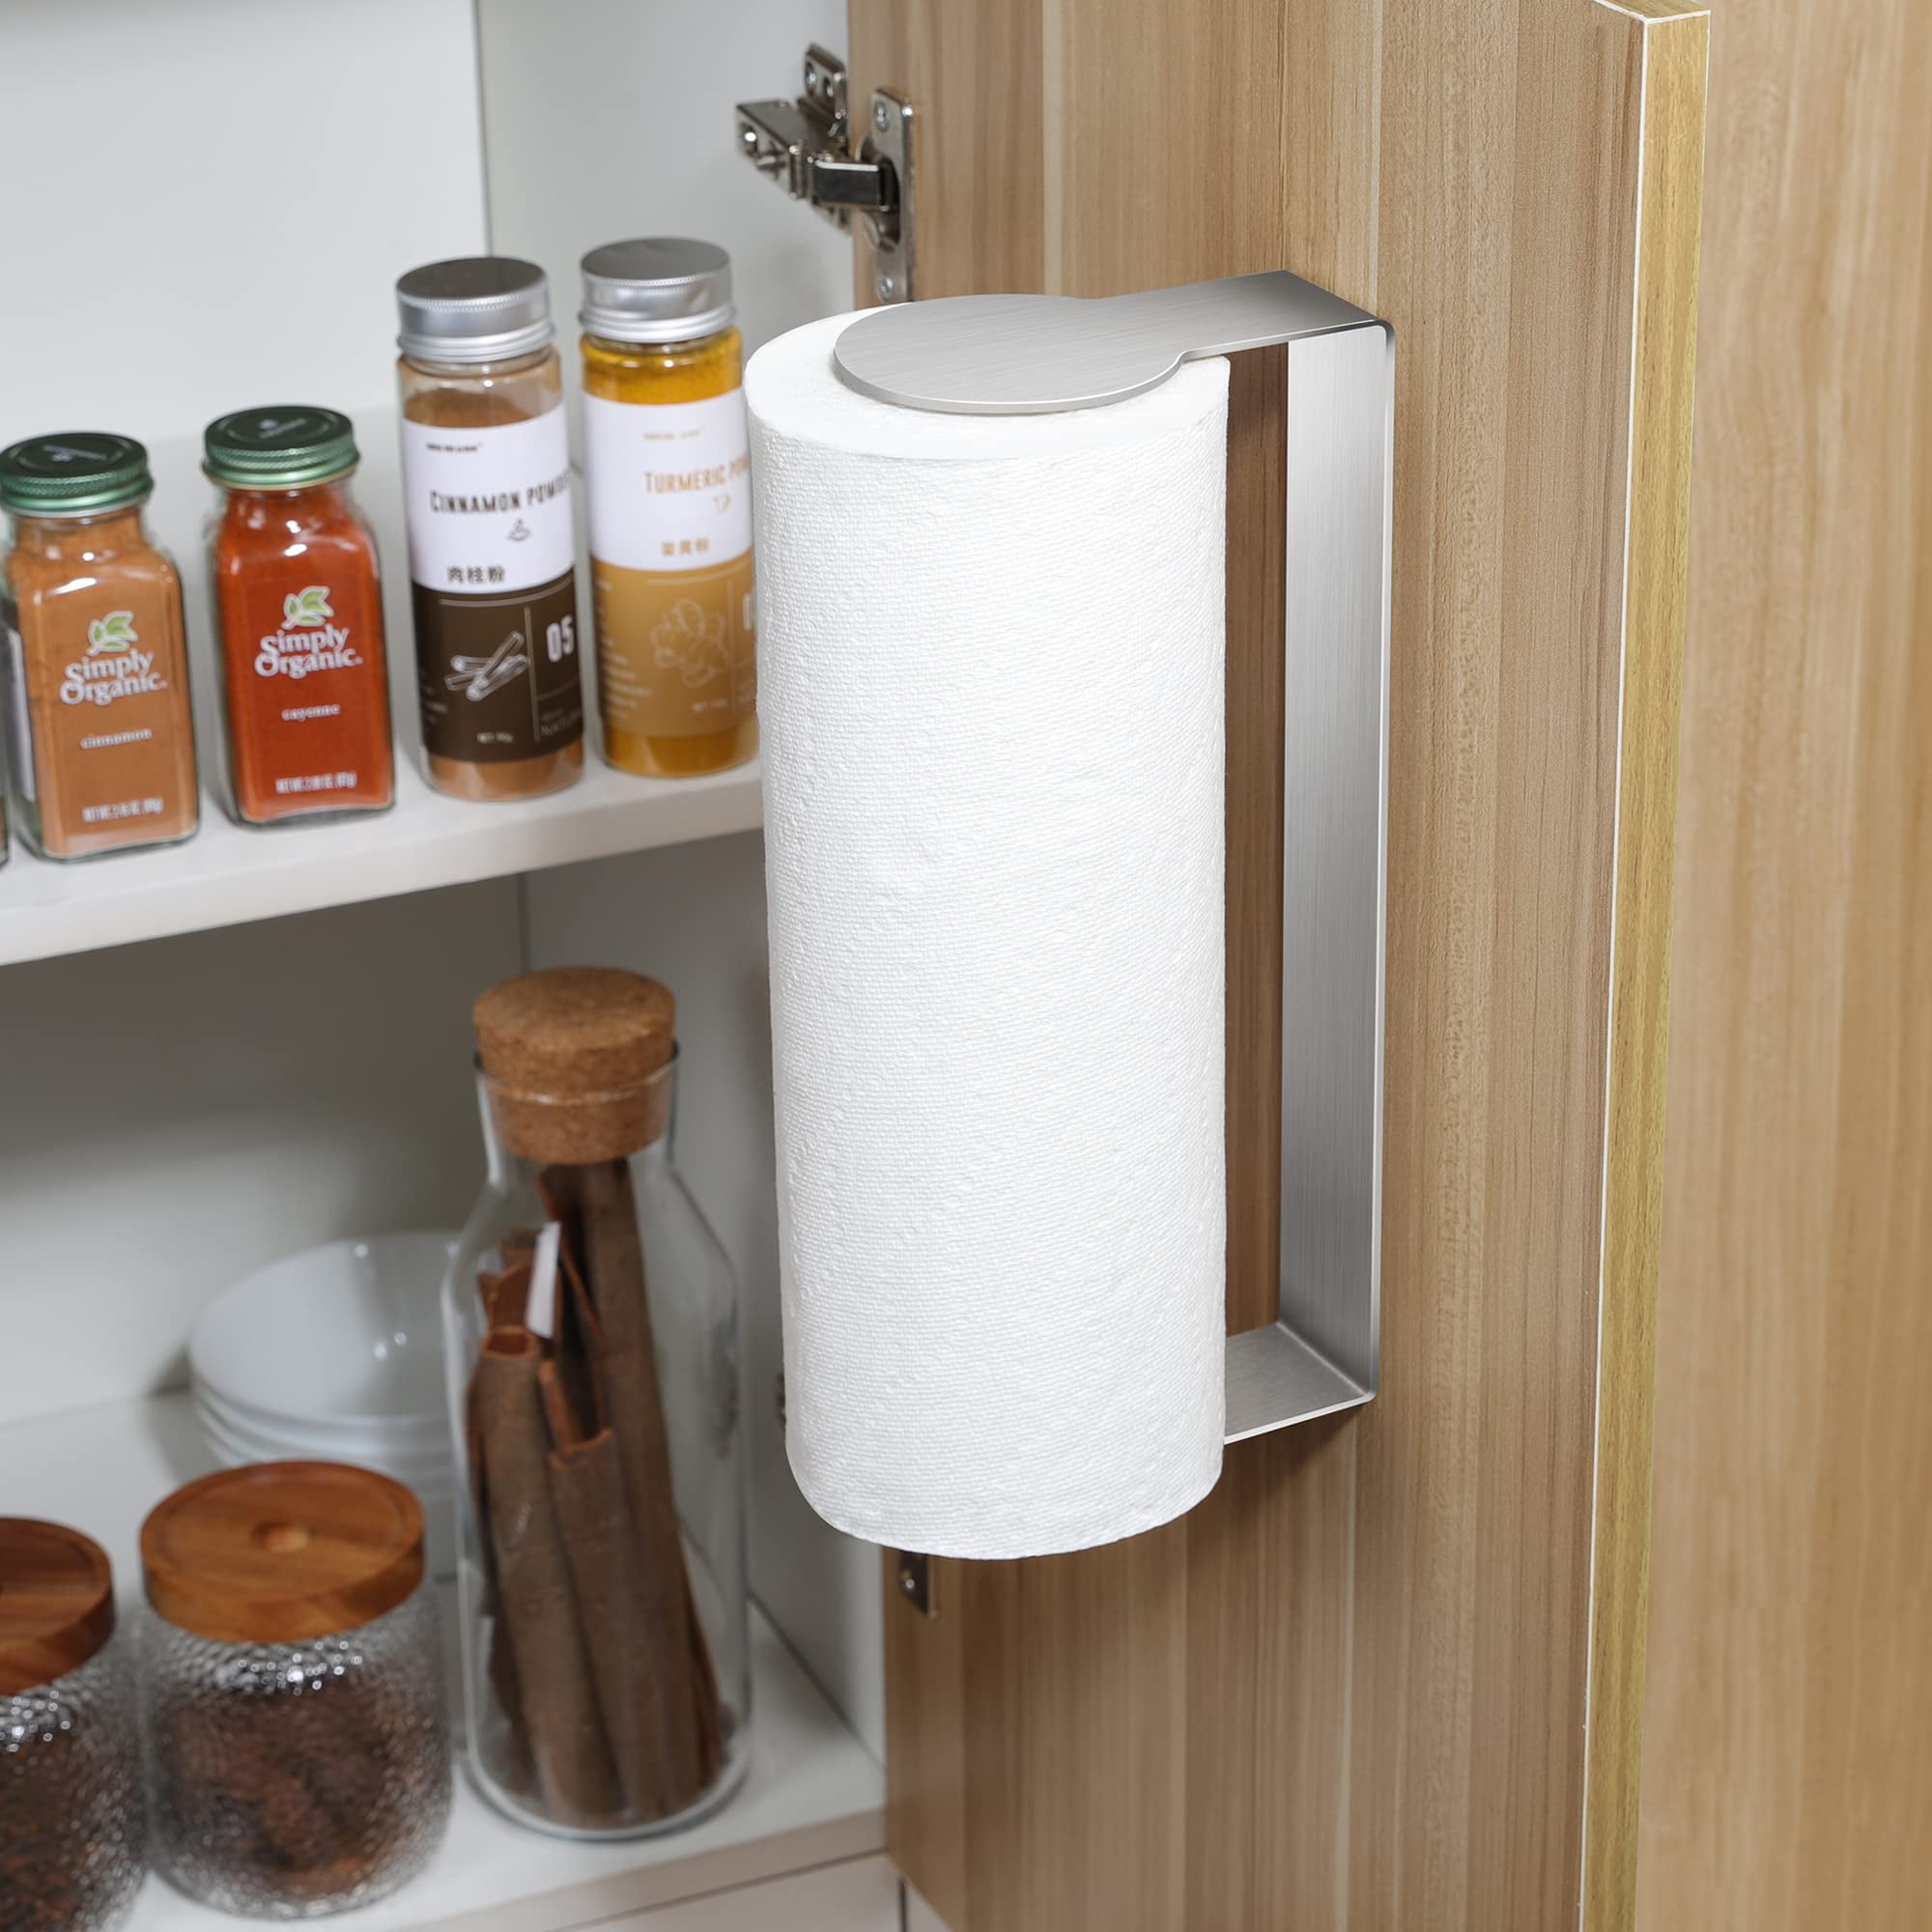 ASTOFLI Self Adhesive Paper Towel Holder Wall Mount, Rustproof 304  Stainless Steel Under Cabinet Paper Towel Rack Under Cabinet-12 IN. (BLACK)